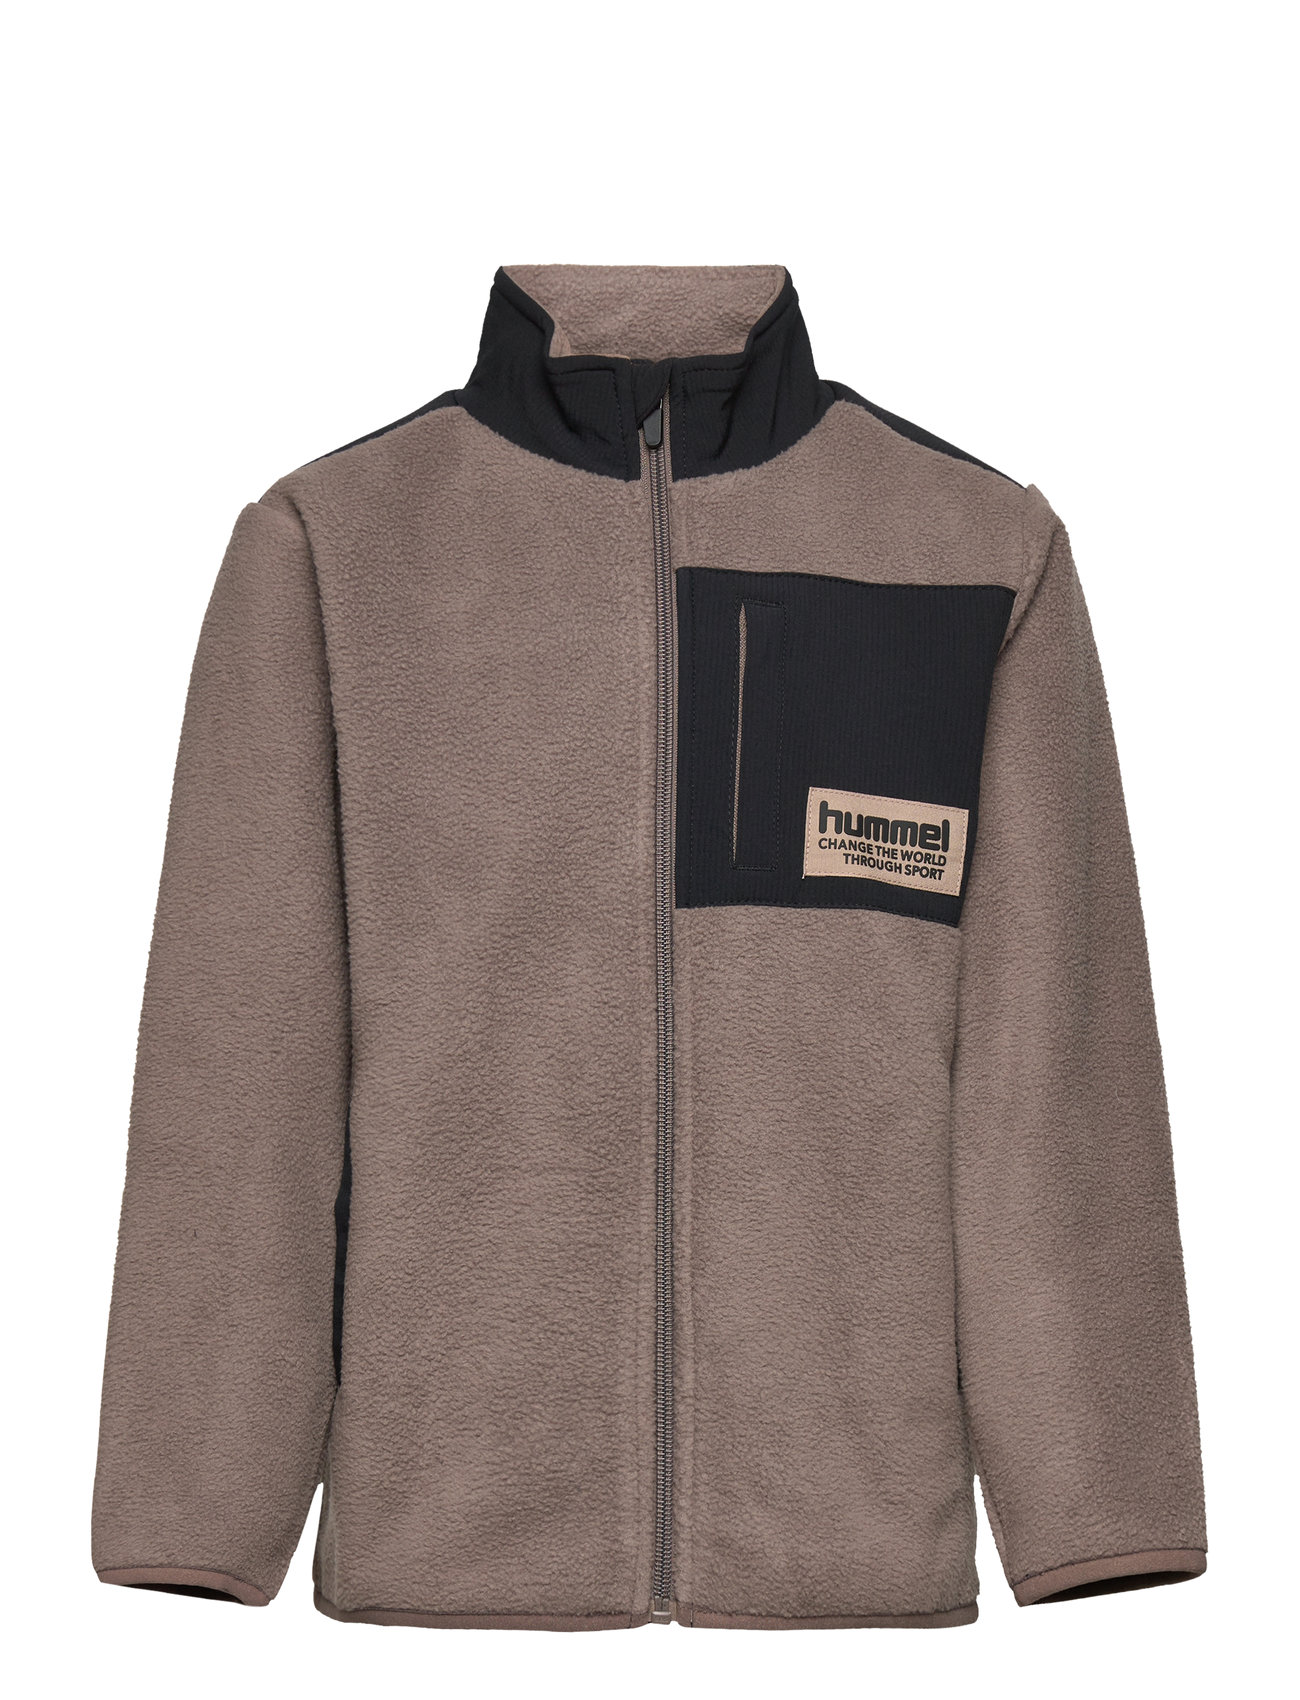 Hummel Hmldare - Fleece Fleece-Kleidung Switzerland | Jacket Boozt.com